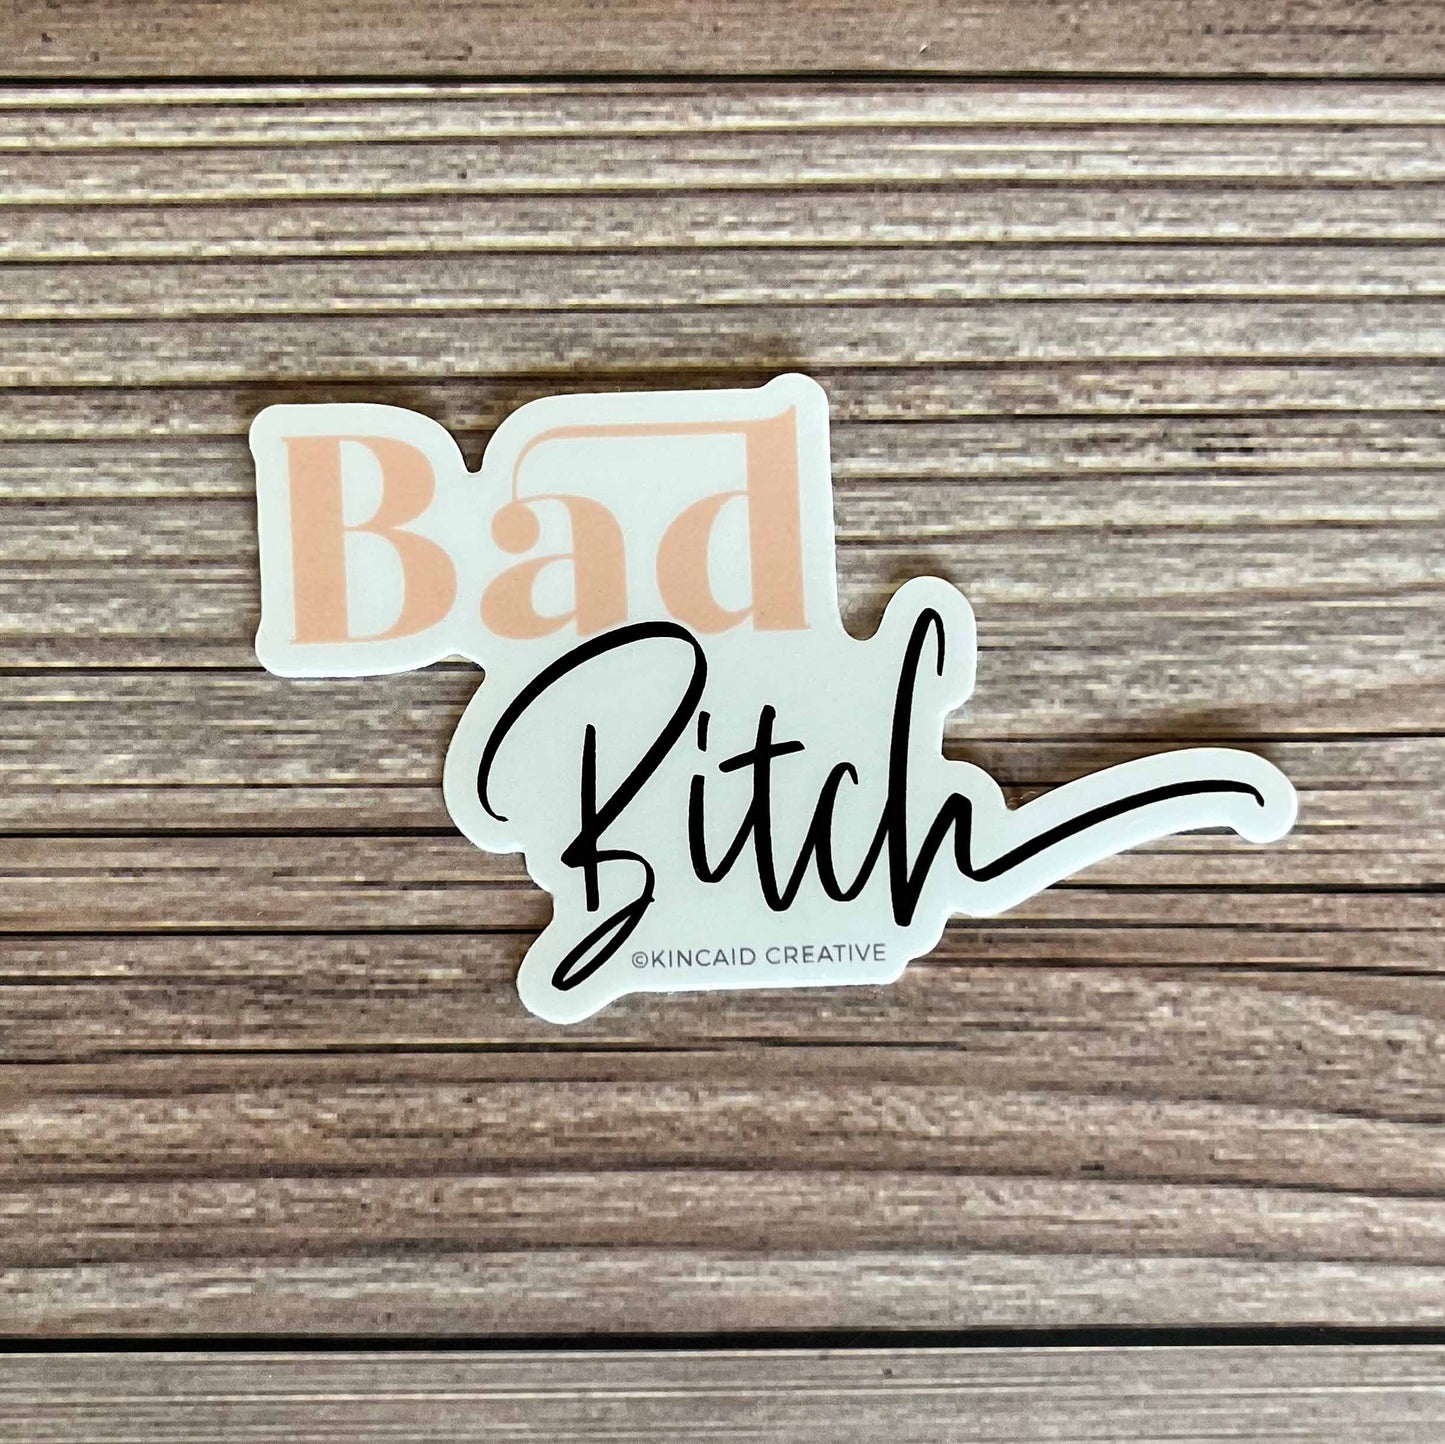 Bad Bitch. Vinyl Sticker.